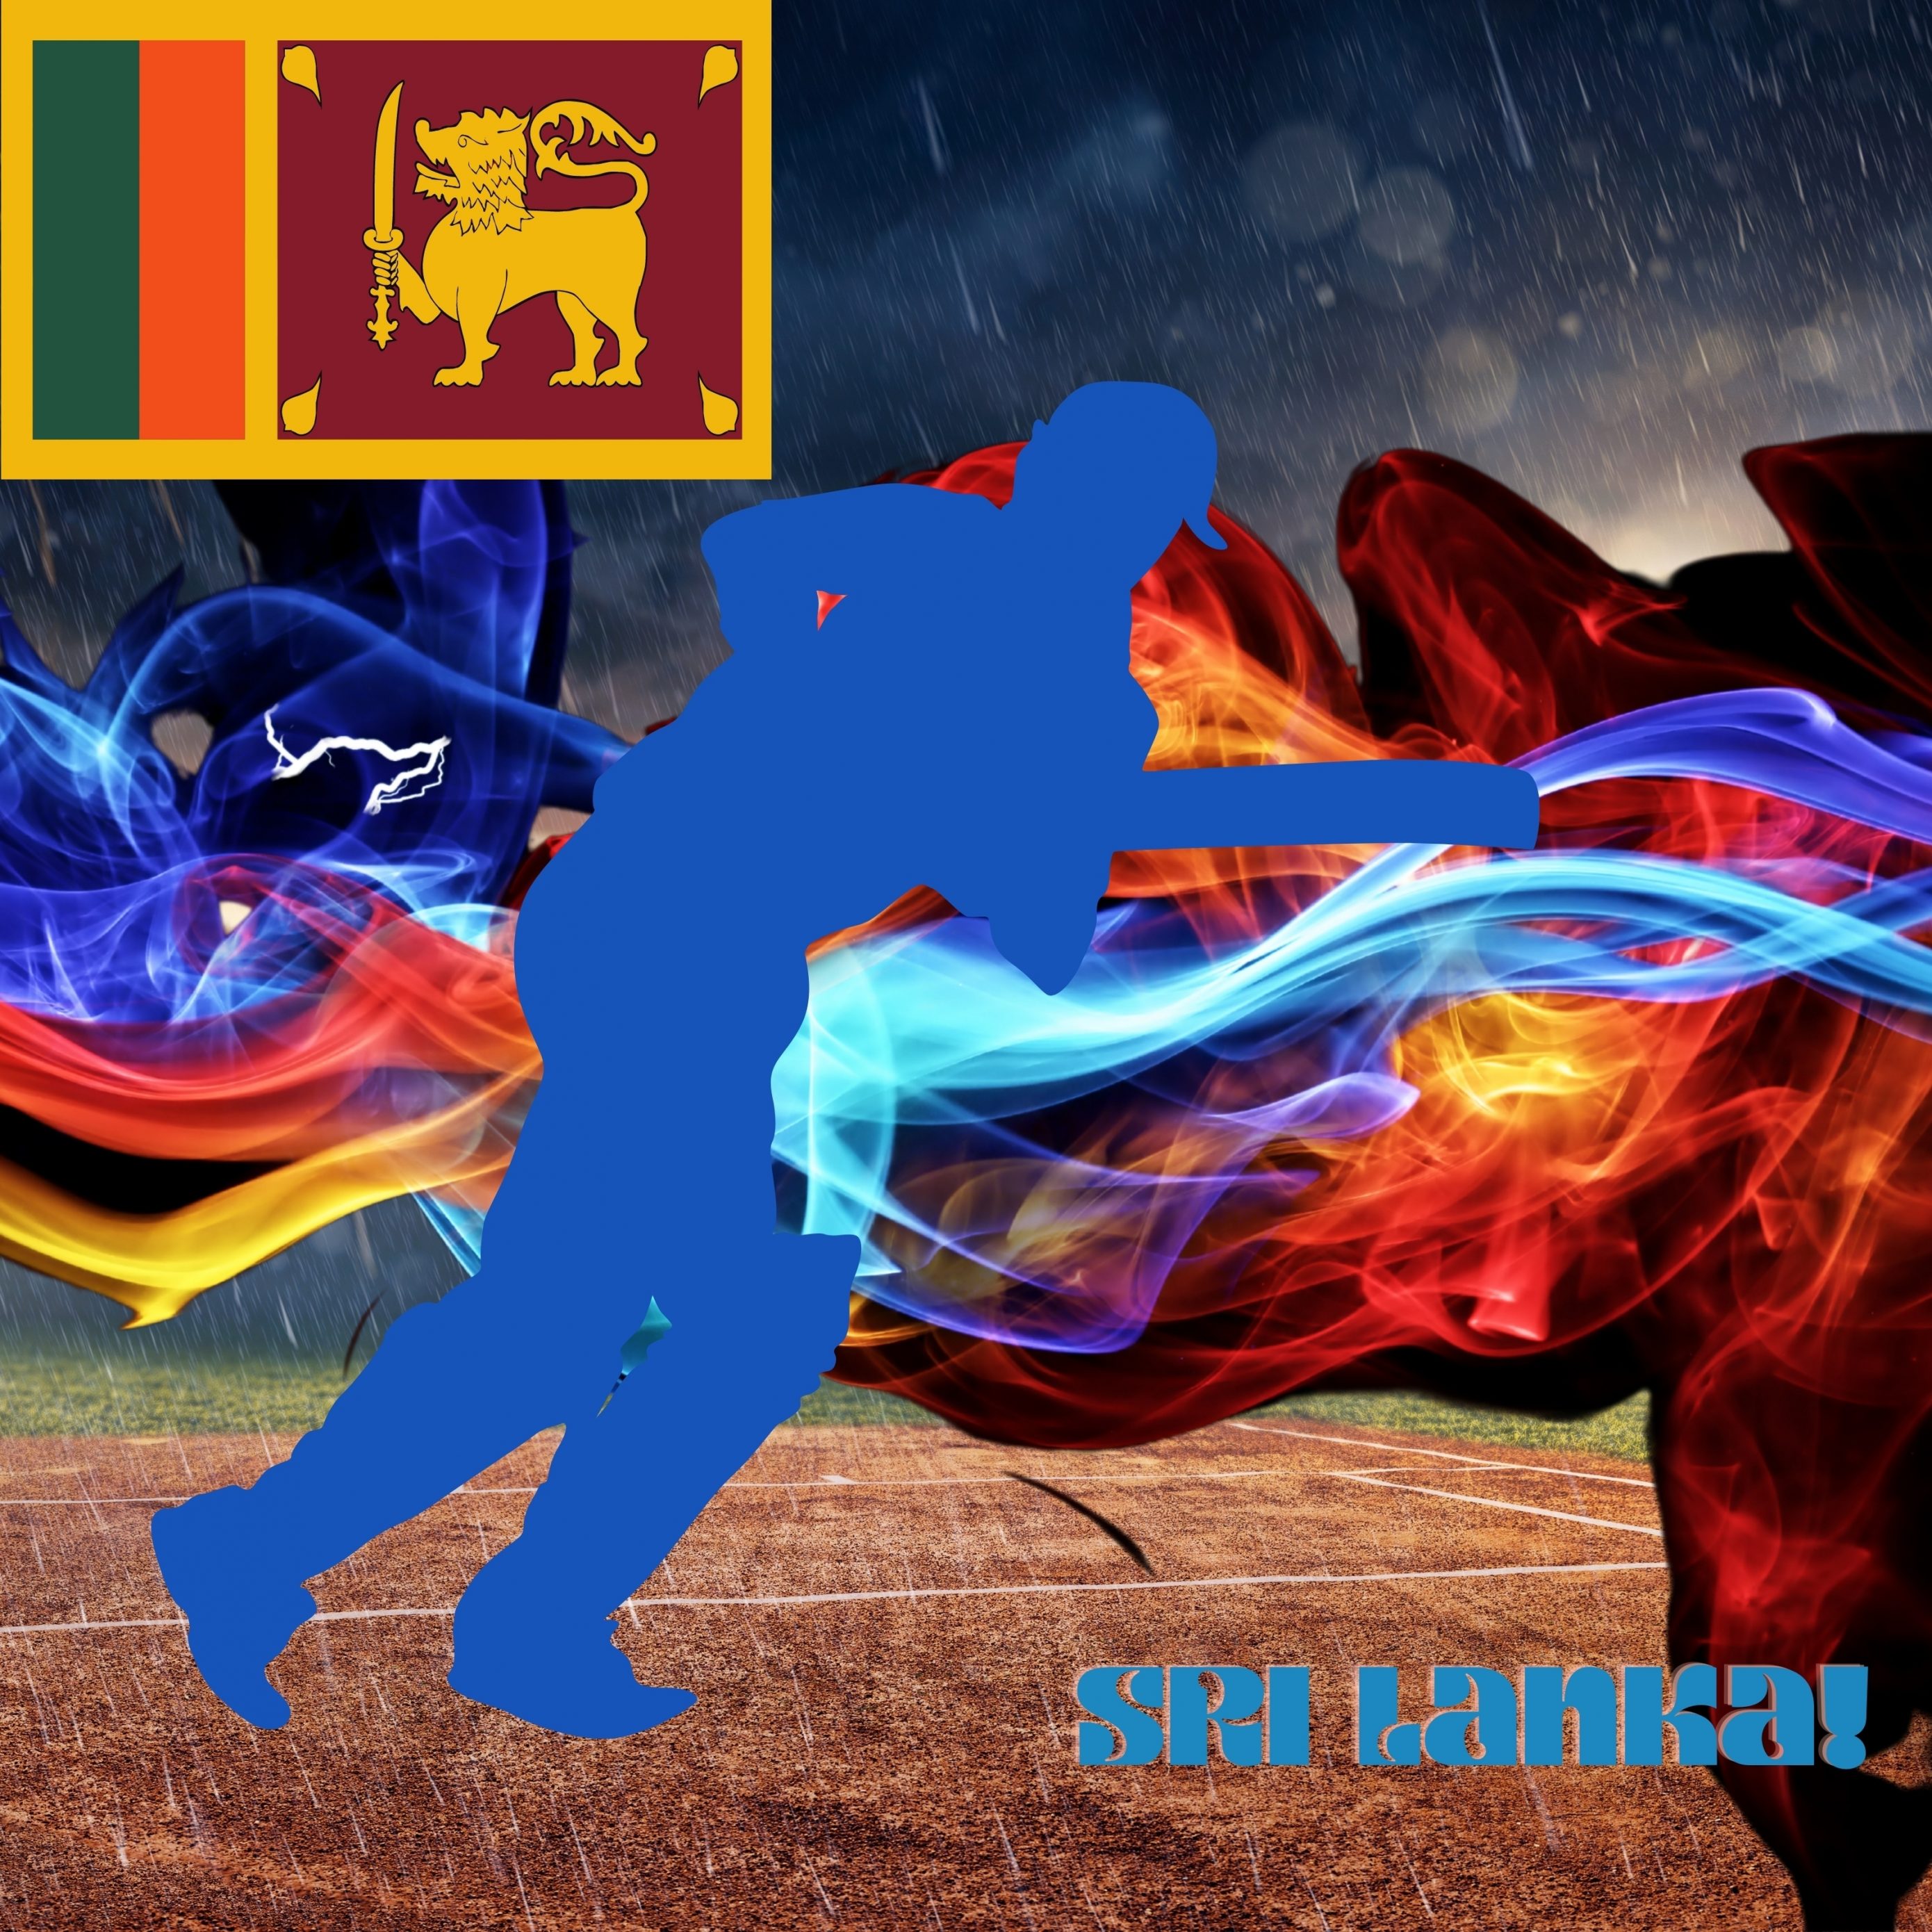 2780x2780 Parallax wallpaper 4k Sri Lanka Cricket Stadium iPad Wallpaper 2780x2780 pixels resolution